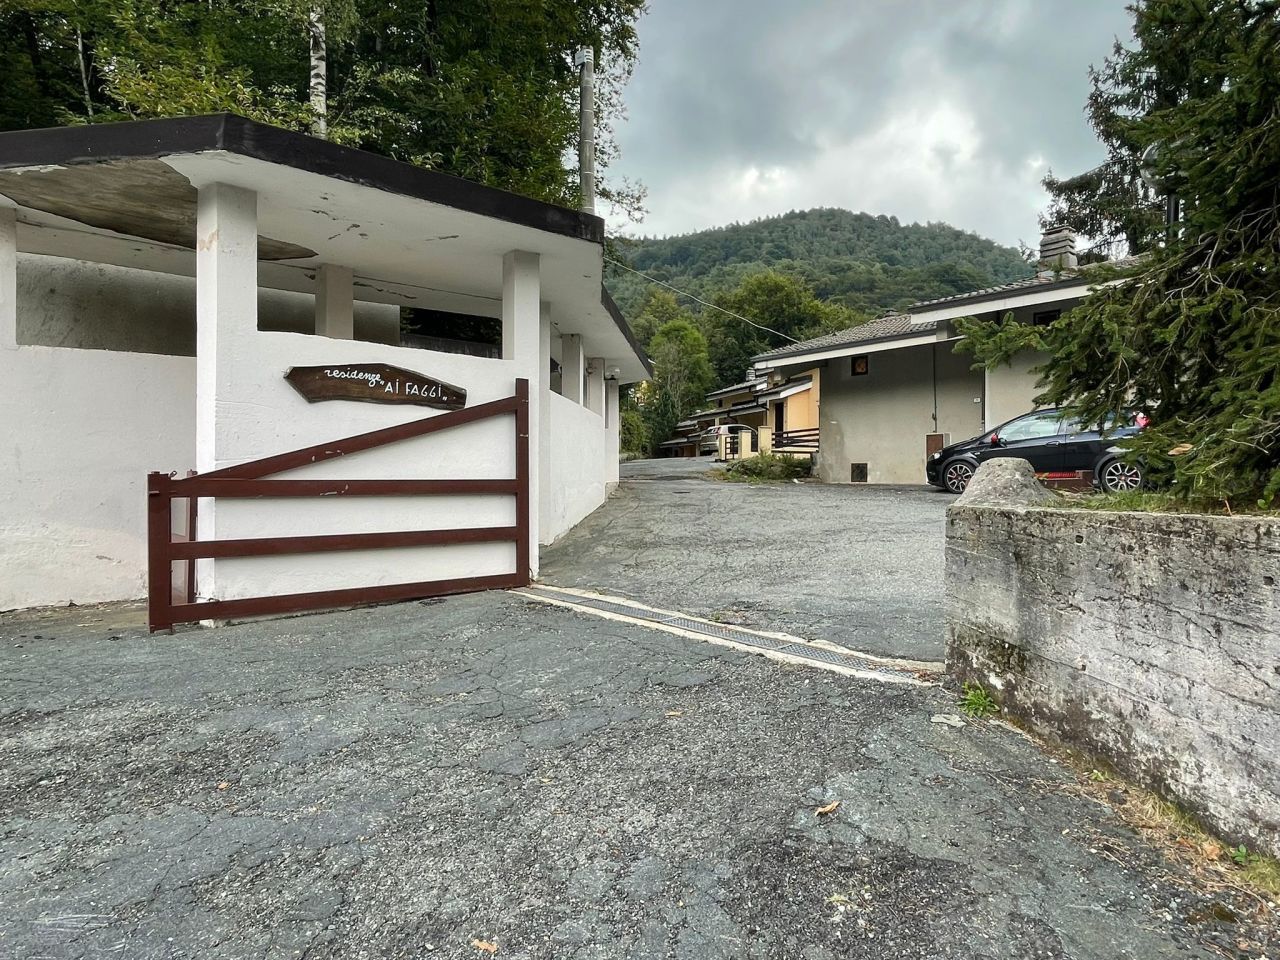 Villa a Schiera in vendita a Corio, 3 locali, prezzo € 37.000 | PortaleAgenzieImmobiliari.it